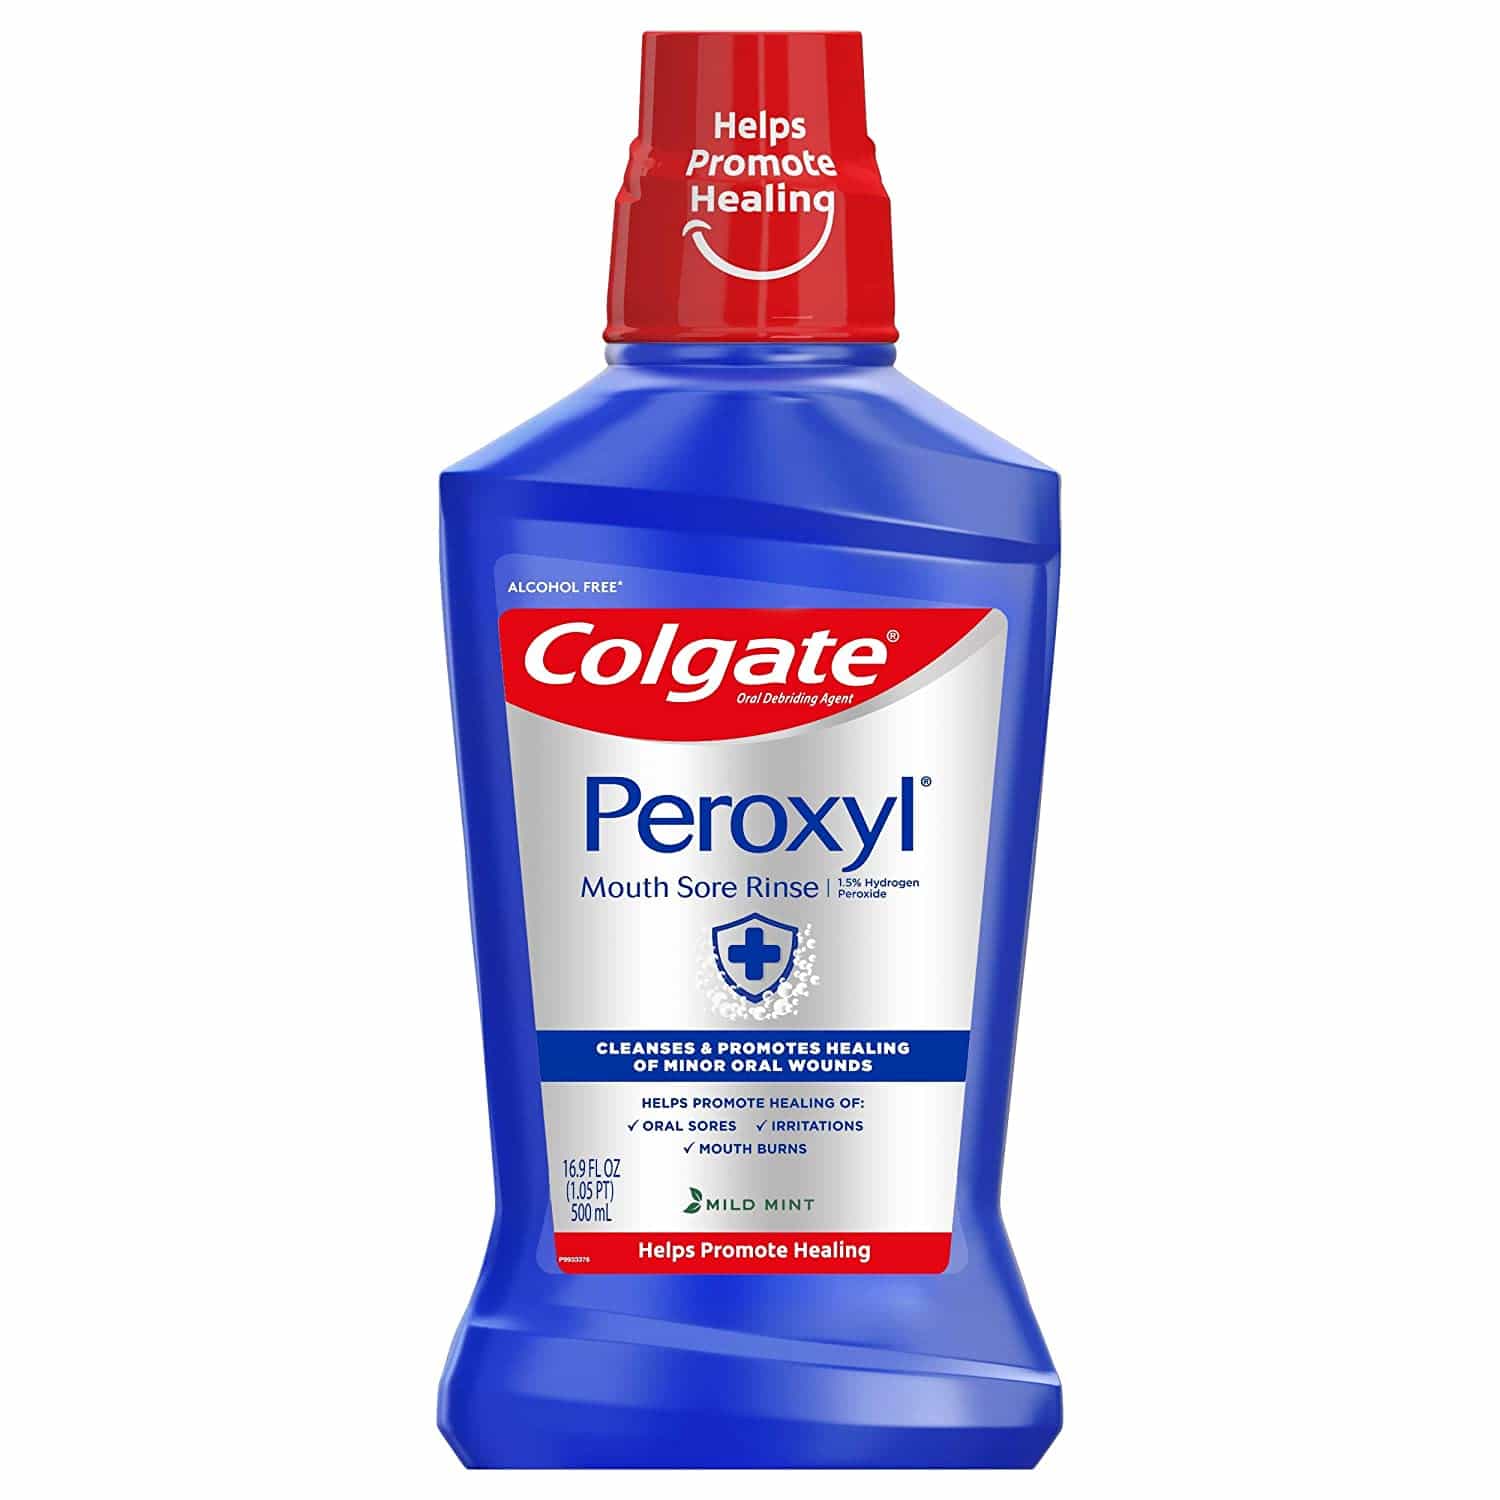 Colgate Peroxyl mouthwash